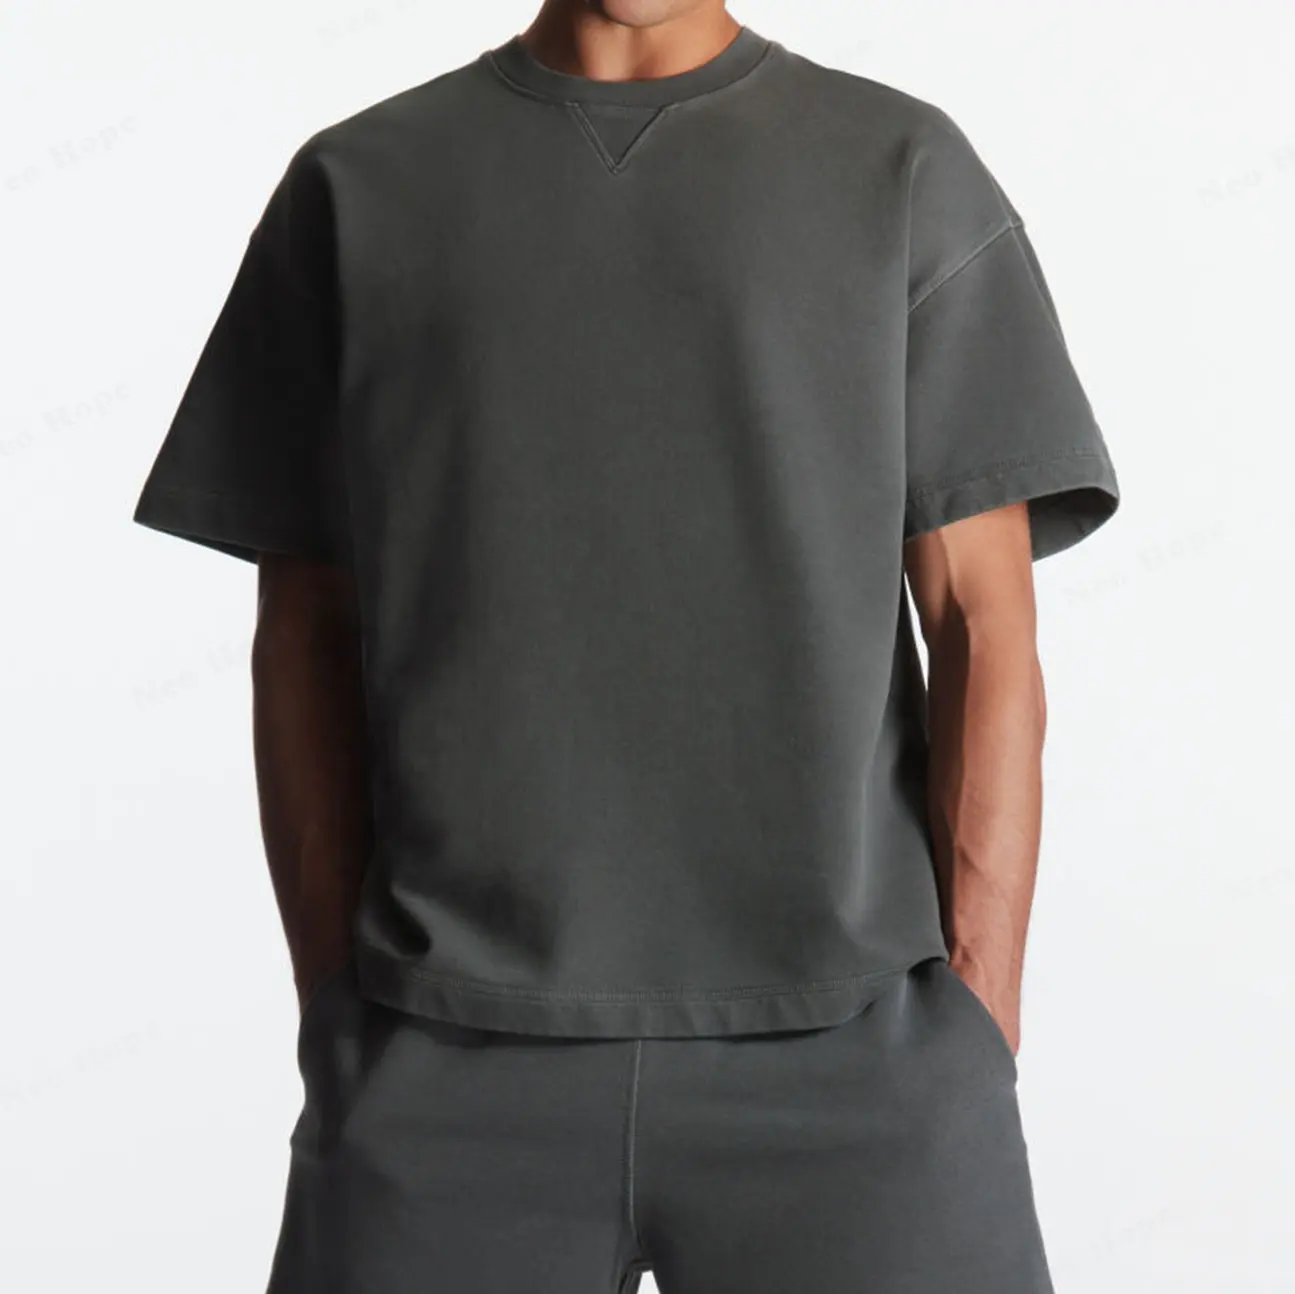 Camiseta masculina unissex plus size personalizada 100% algodão, camiseta de gola redonda com ombro caído, transparente e lisa